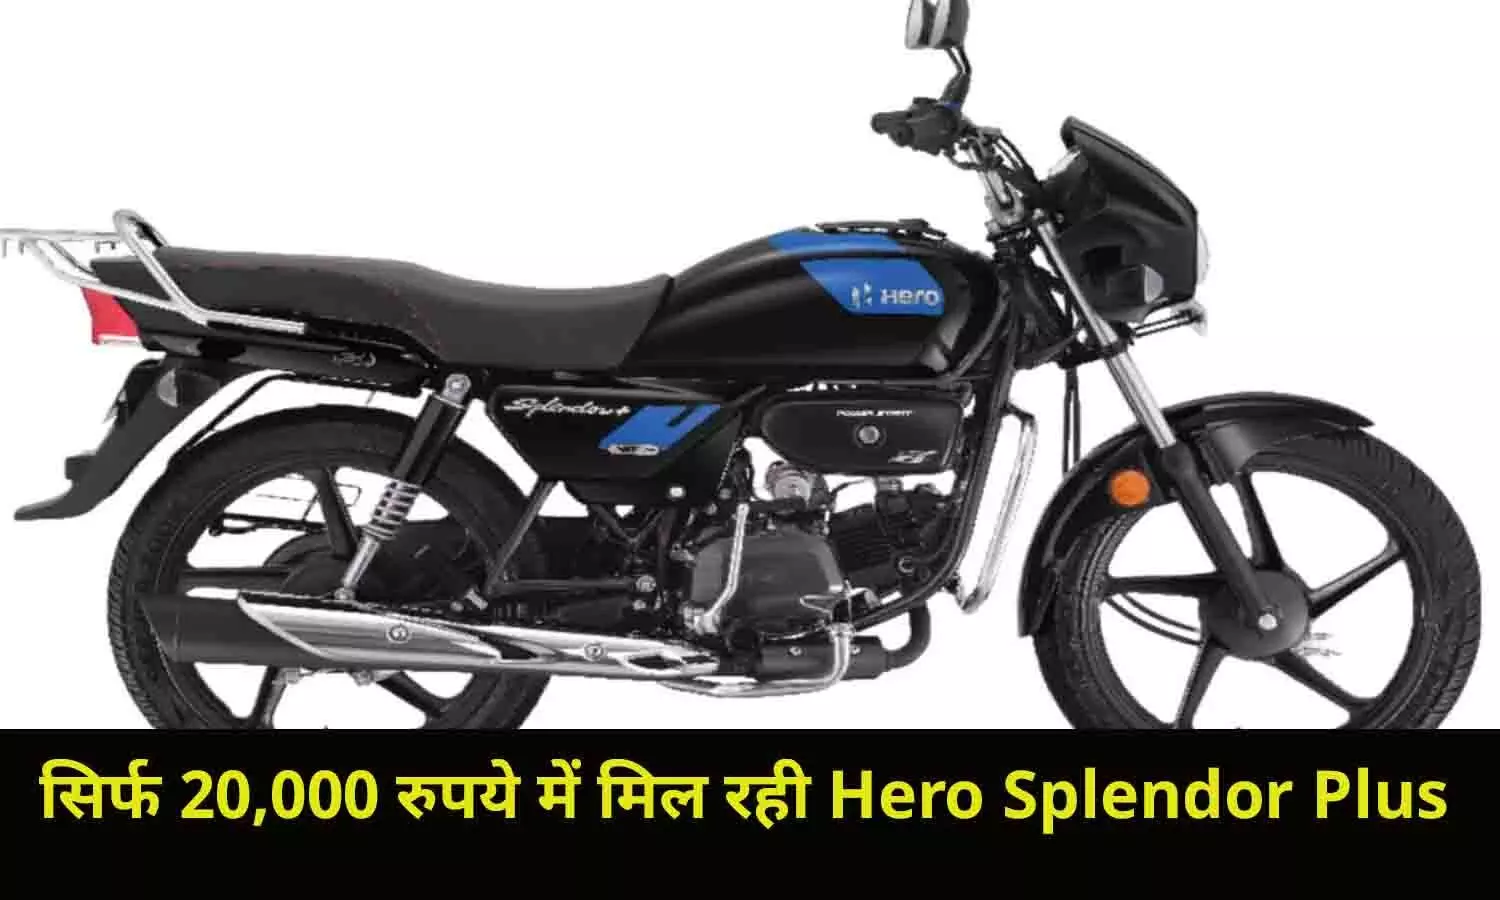 सिर्फ 20,000 रुपये में मिल रही Hero Splendor Plus